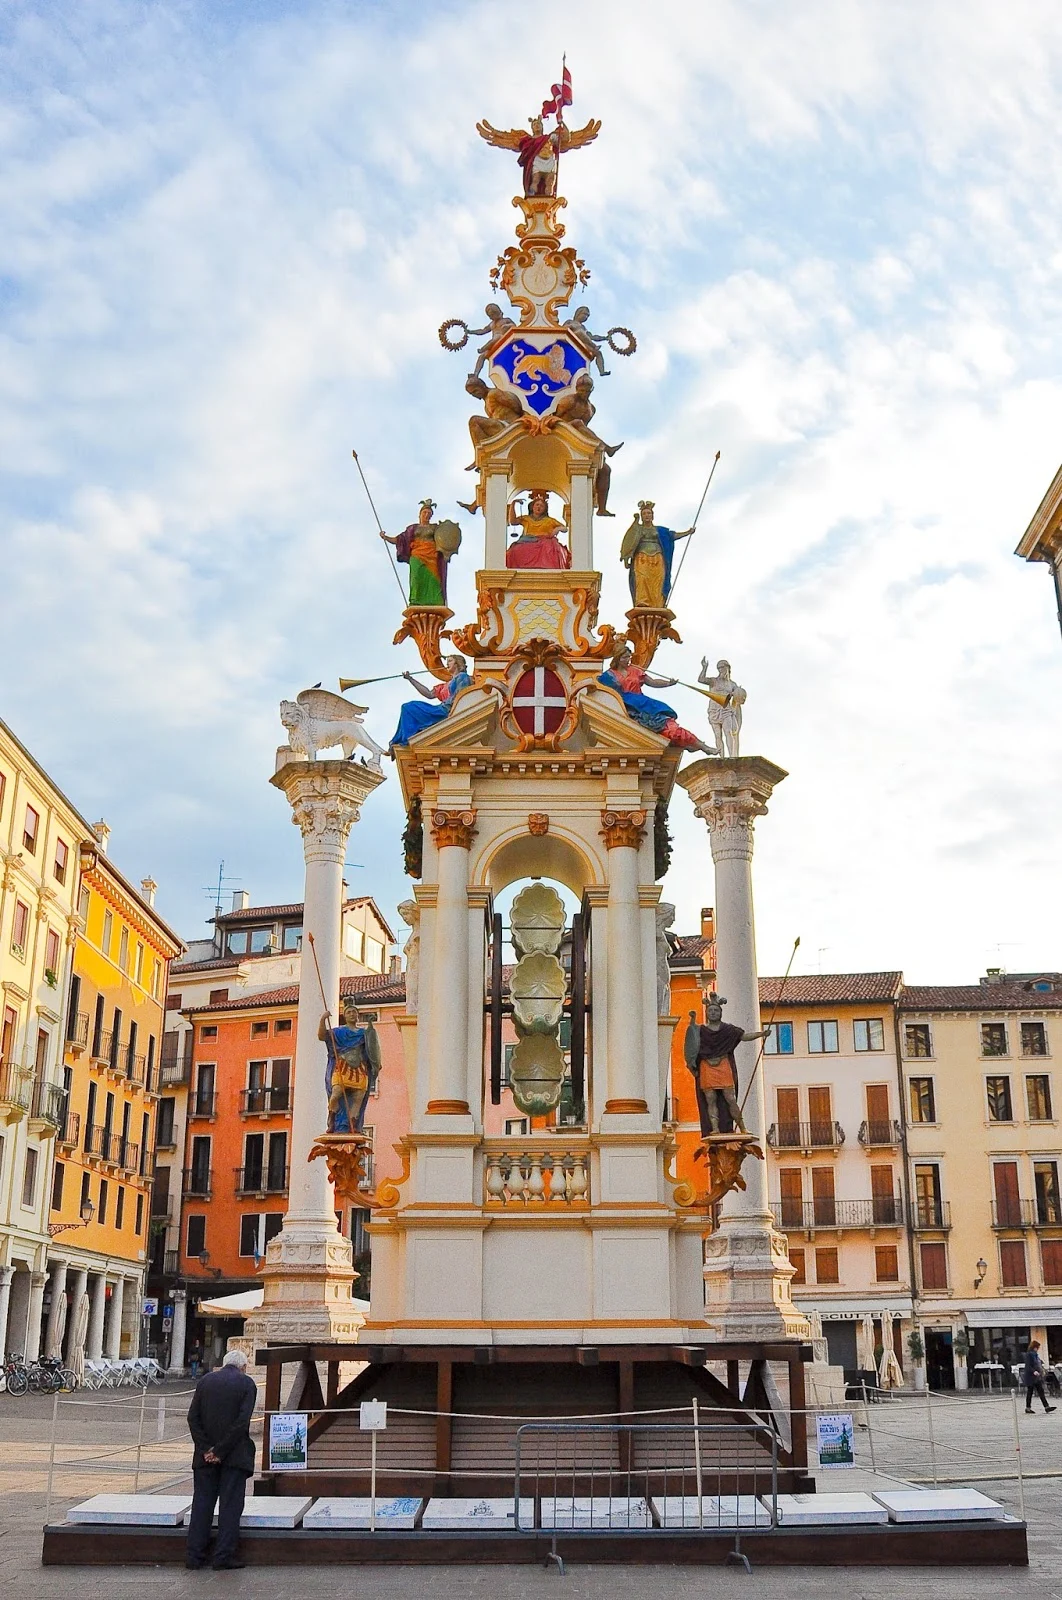 Giro della Rua 2015- Piazza dei Signori, Vicenza, Italy - www.rossiwrites.com